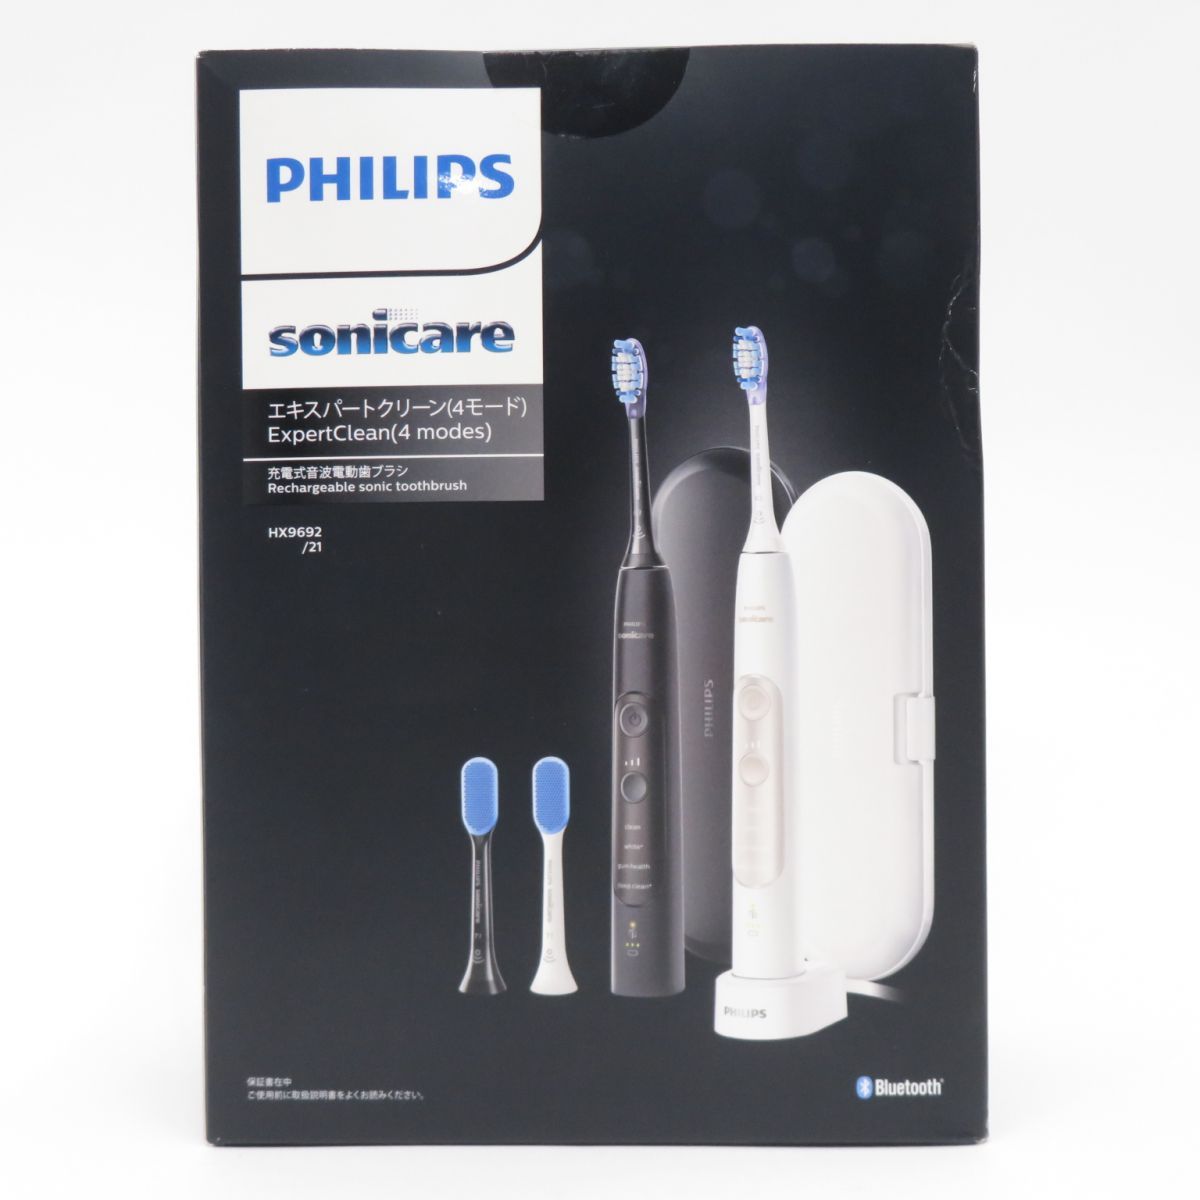 【未開封】PHILIPS フィリップス Sonicare ソニッケアー エキスパートクリーン (4モード) HX9692/21 電動歯ブラシ